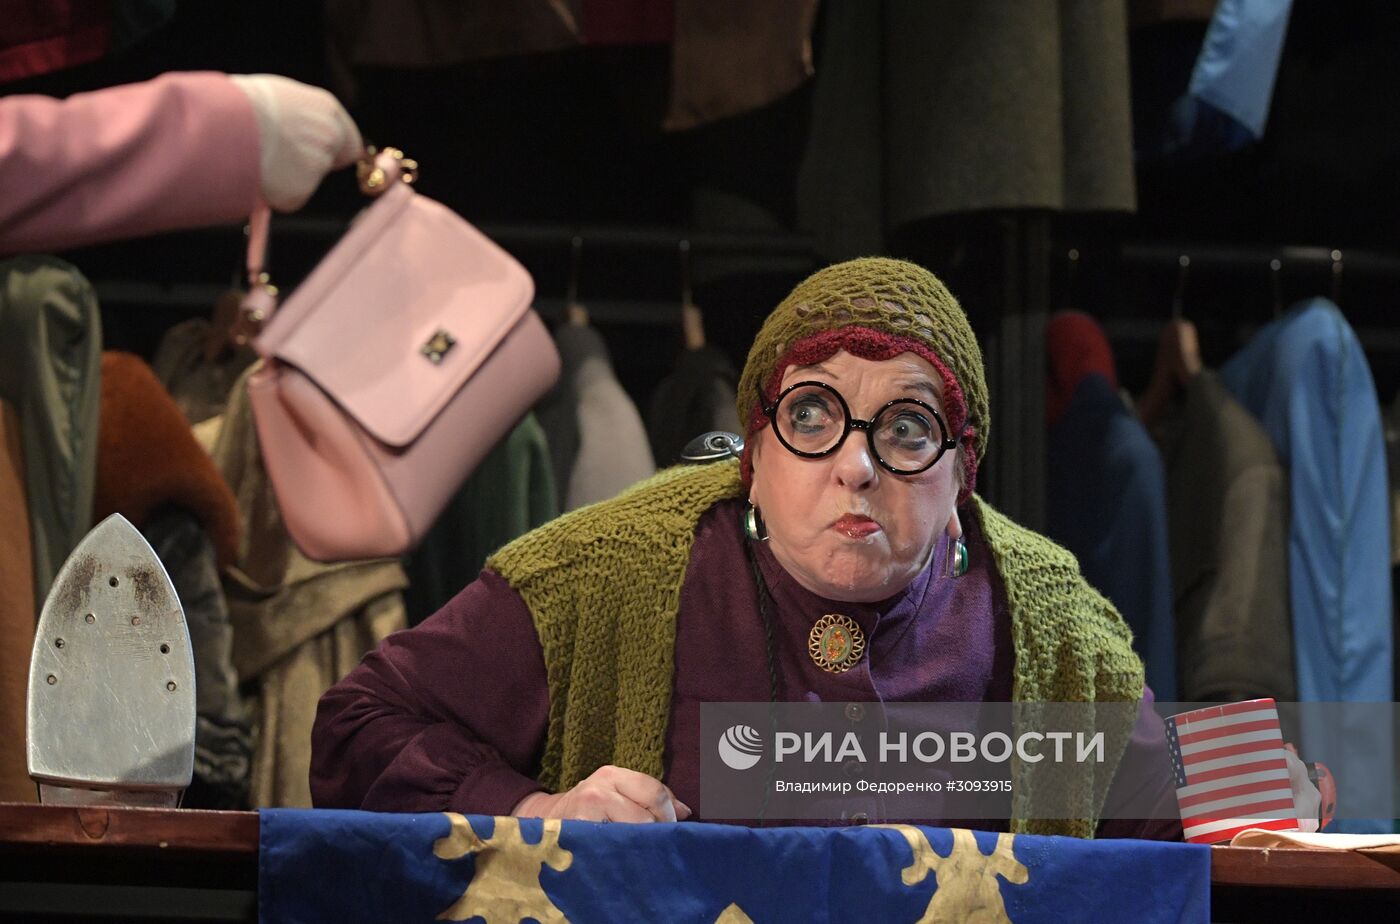 Прогон спектакля "Эта прекрасная жизнь" в театре им. Пушкина